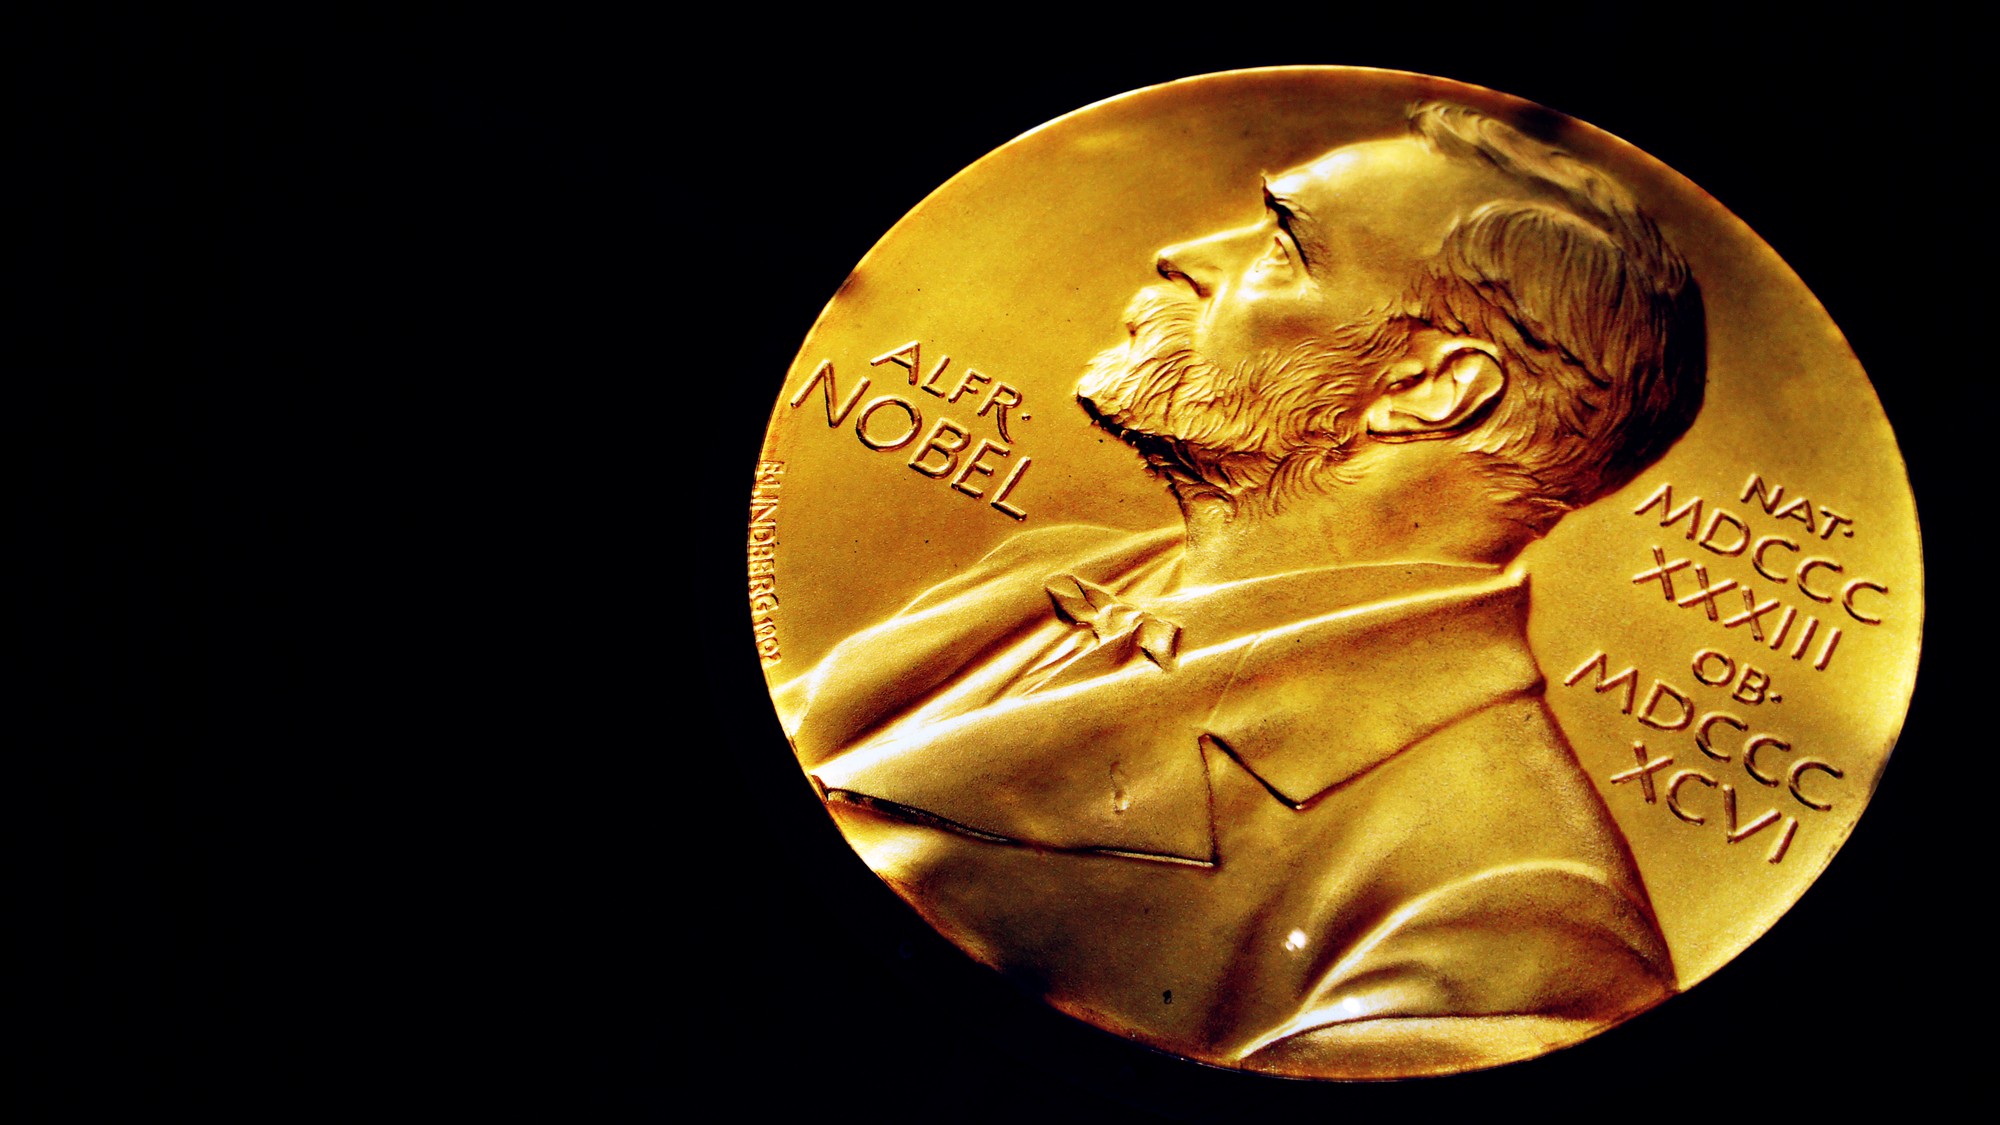 50年で ノーベル賞 30人 政府目標の達成に必要なことは 富裕層向け資産防衛メディア 幻冬舎ゴールドオンライン